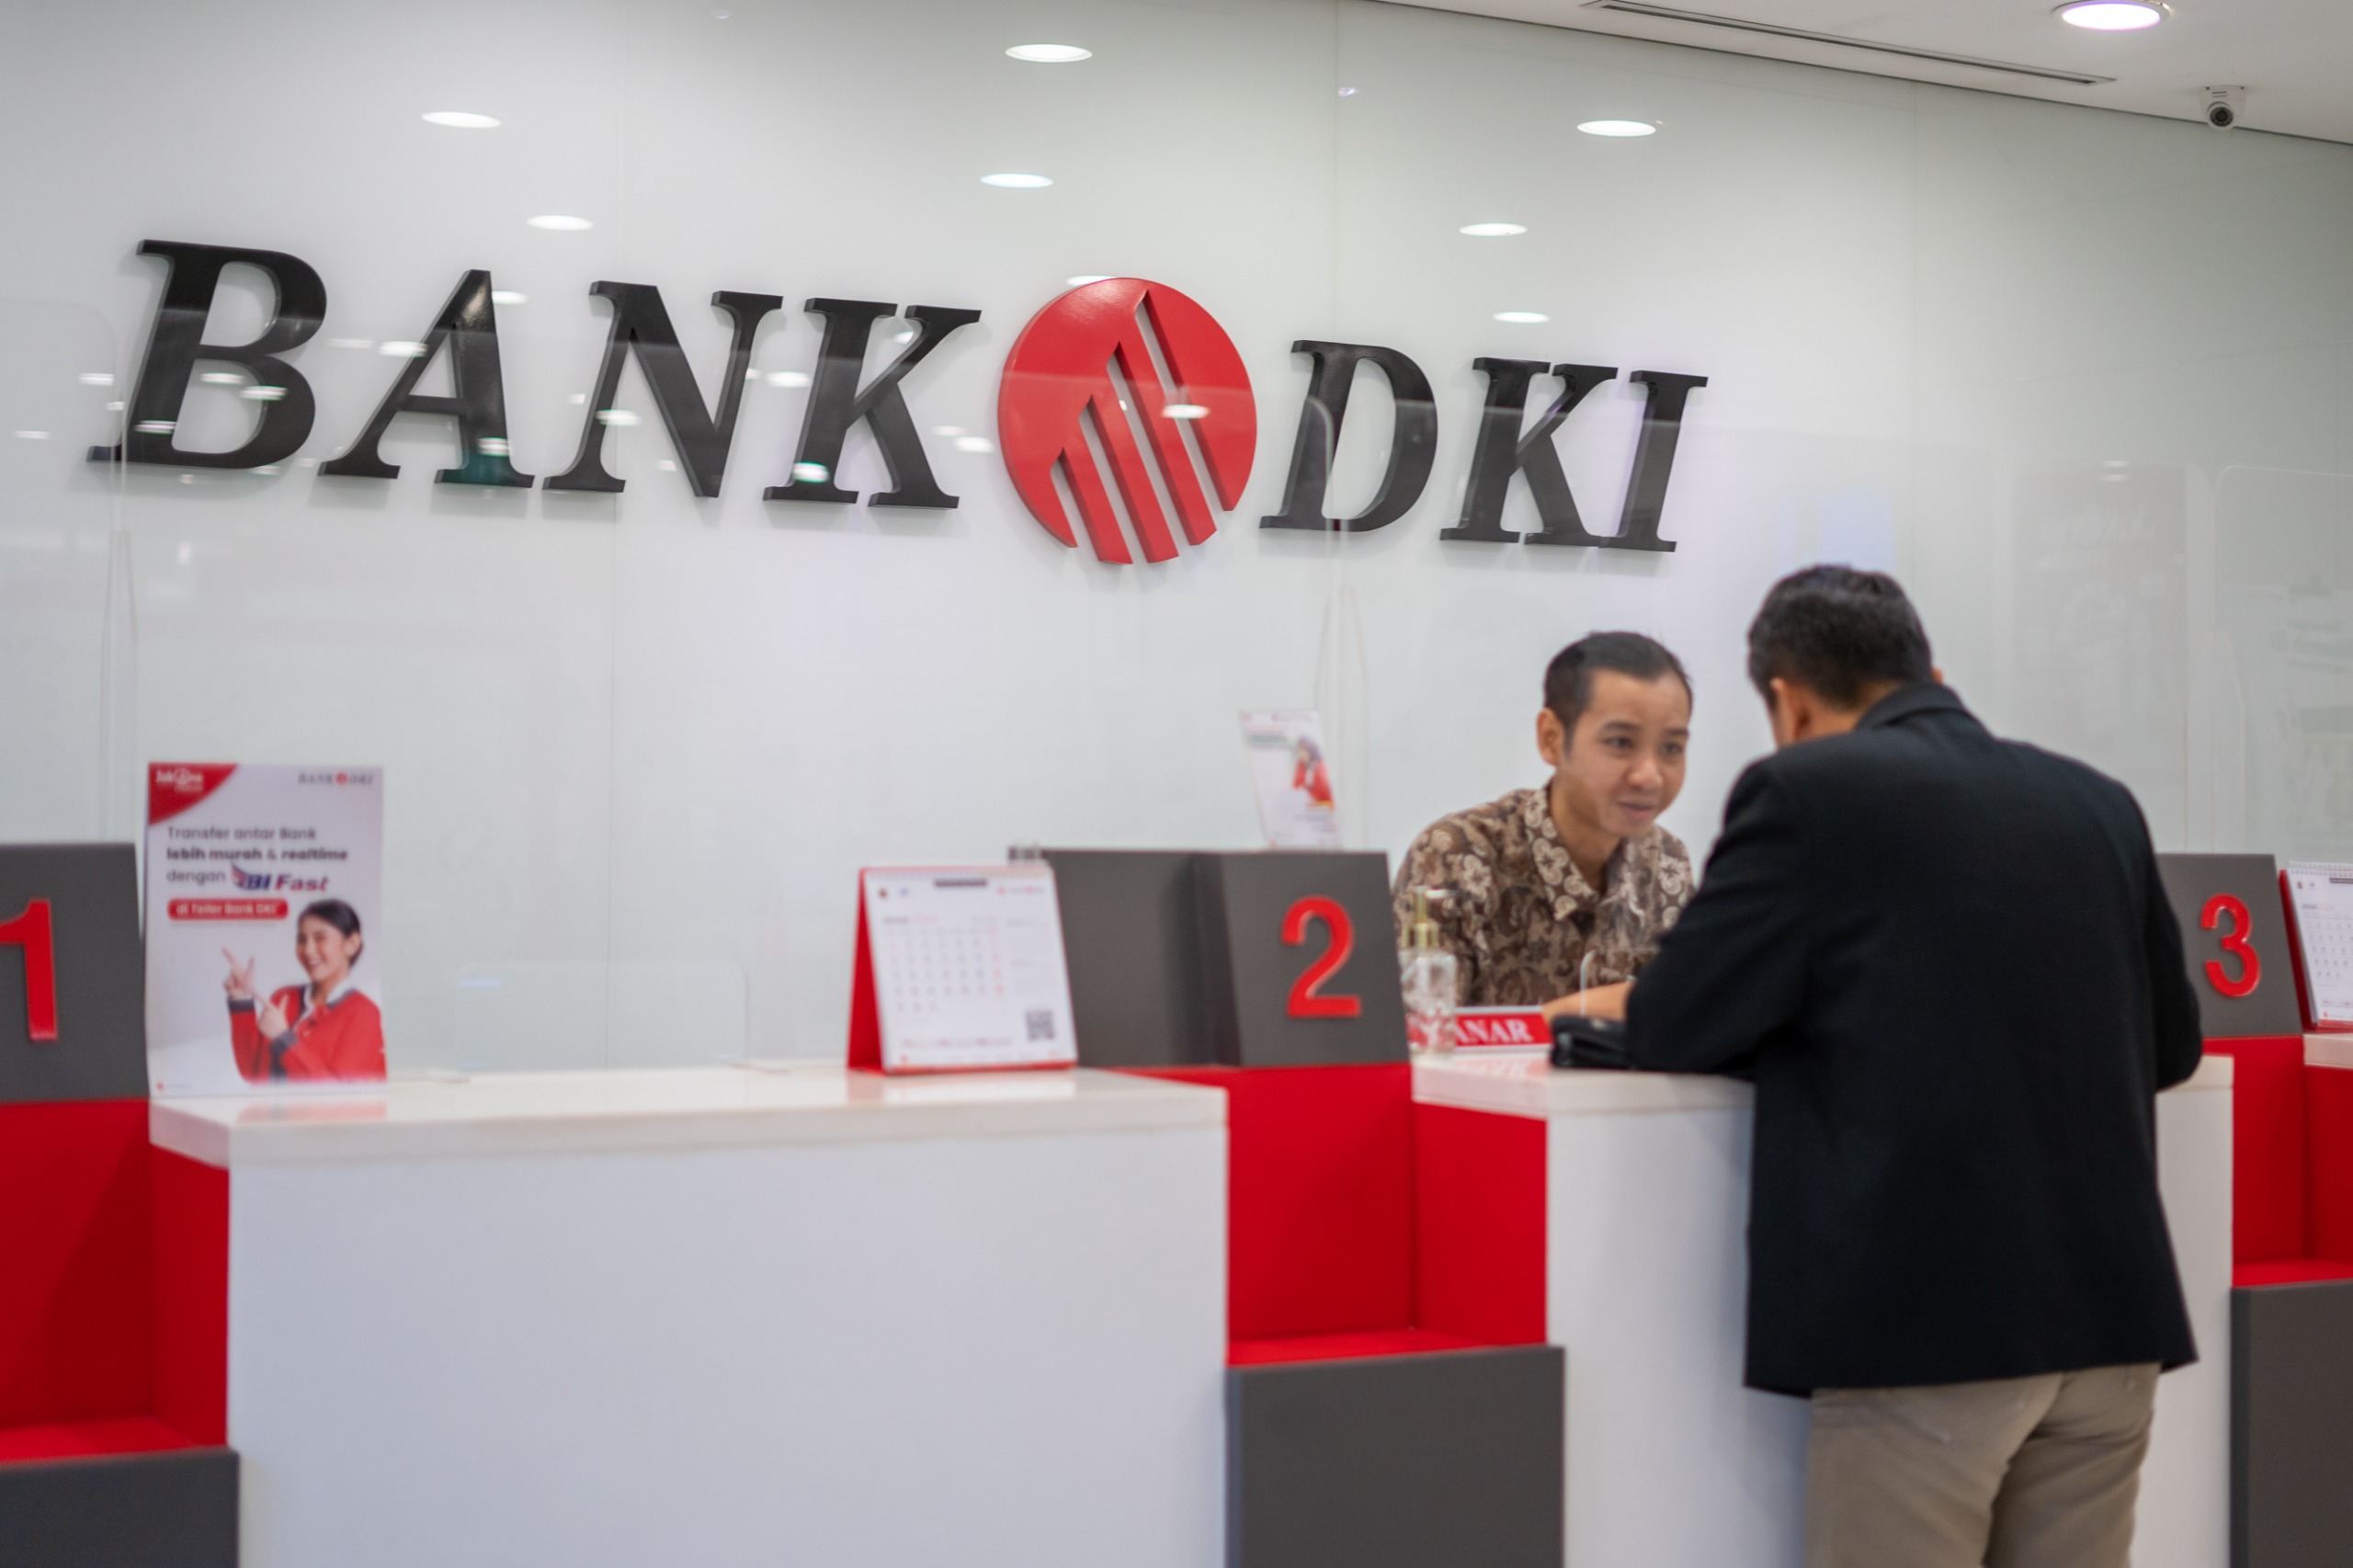 Bank DKI Raih Penghargaan Indonesia Best 50 CEO 2024